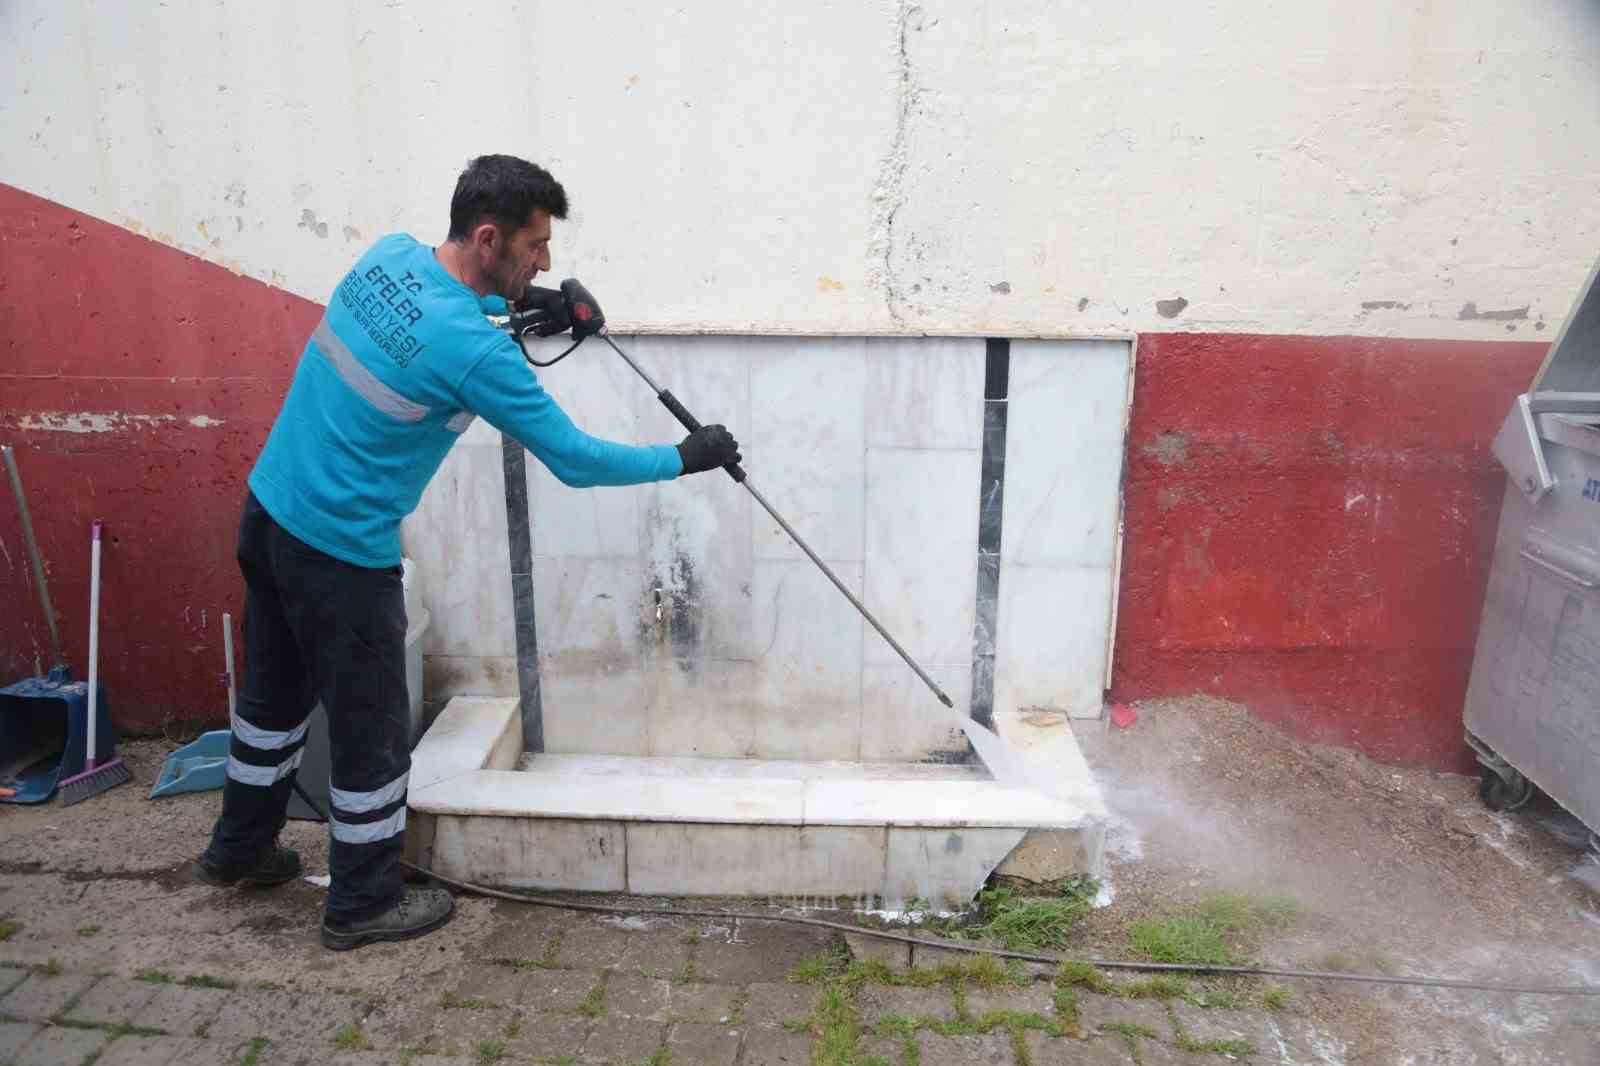 Efeler Belediyesi çöp konteynerlerini yıkayıp dezenfekte ediyor
